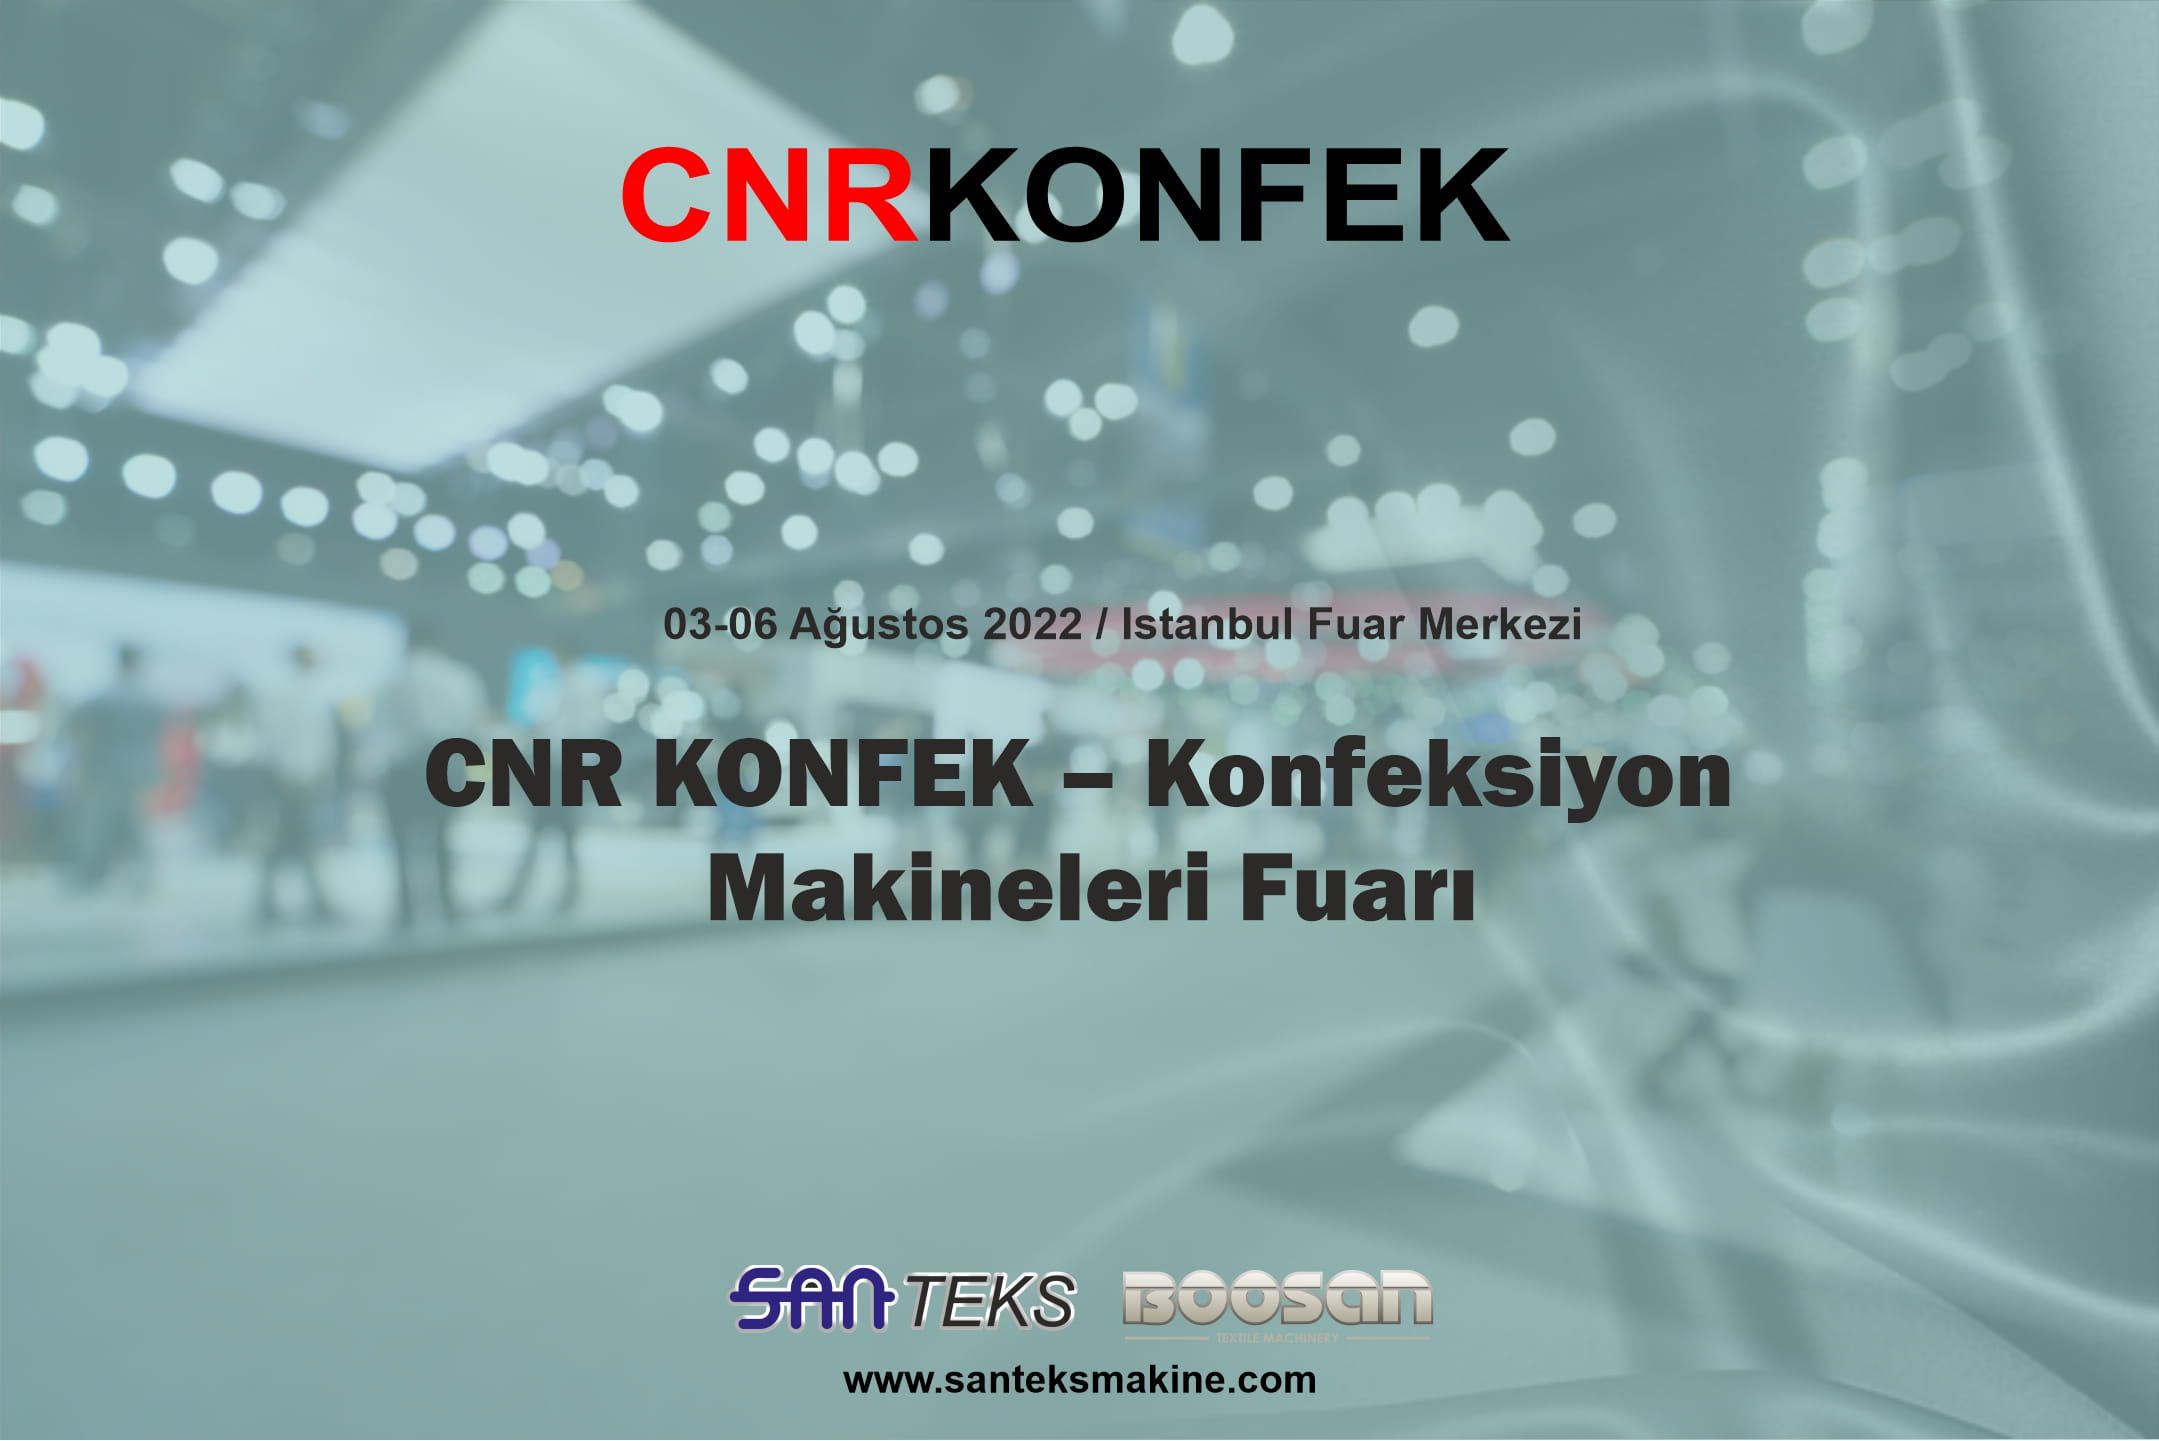 CNR KONFEK – Konfeksiyon Makineleri Fuarı